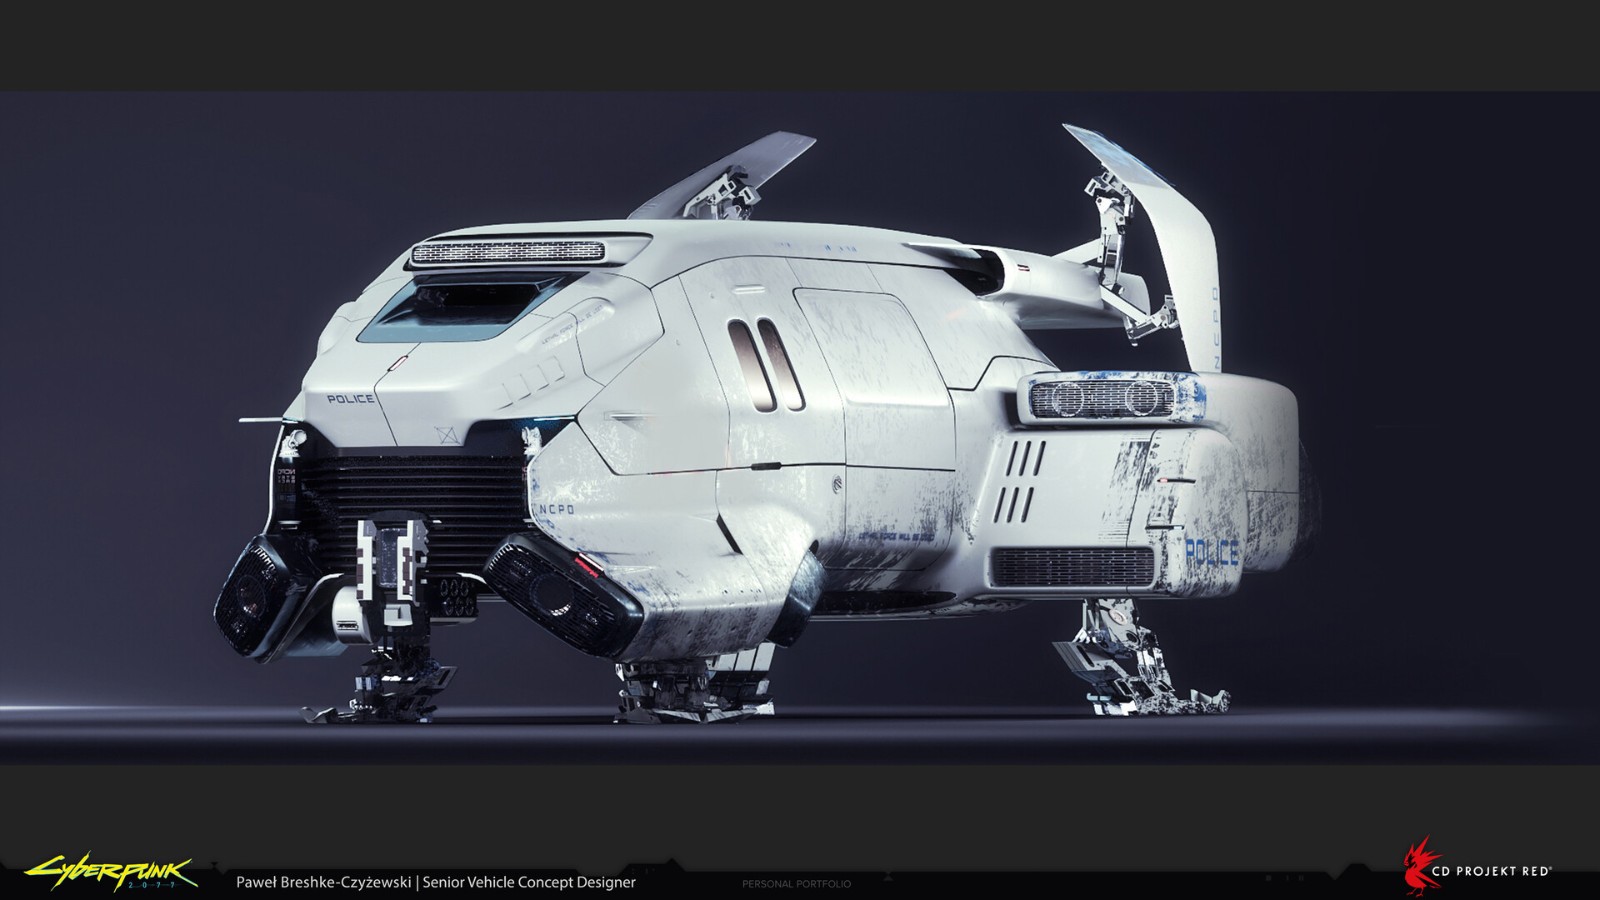 《赛博朋克2077》公开新概念图 展示全新军用重型飞行器